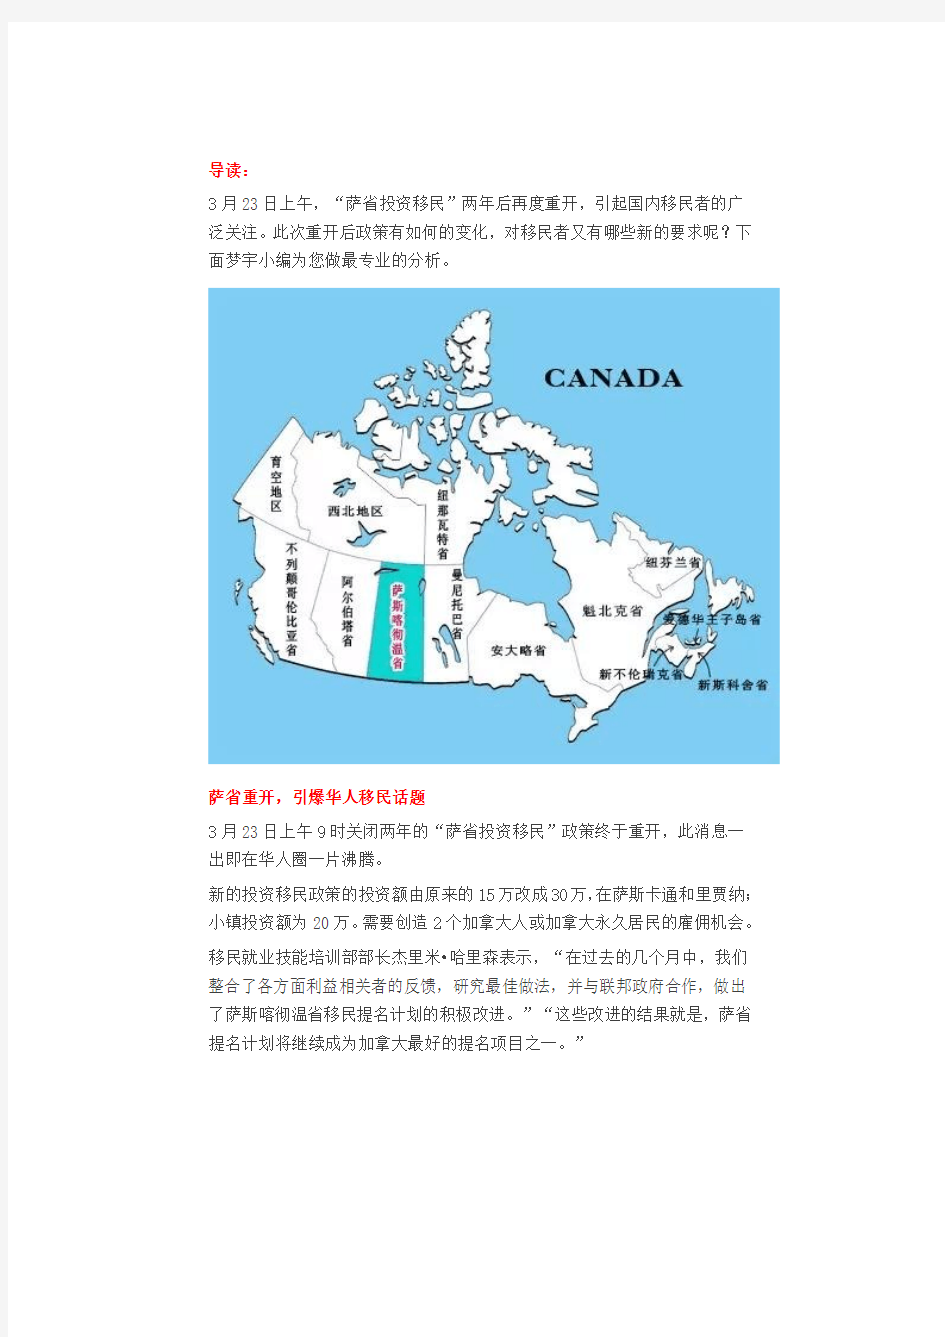 【梦宇国际】加拿大移民喜讯!3月23 萨省投资移民新政出台